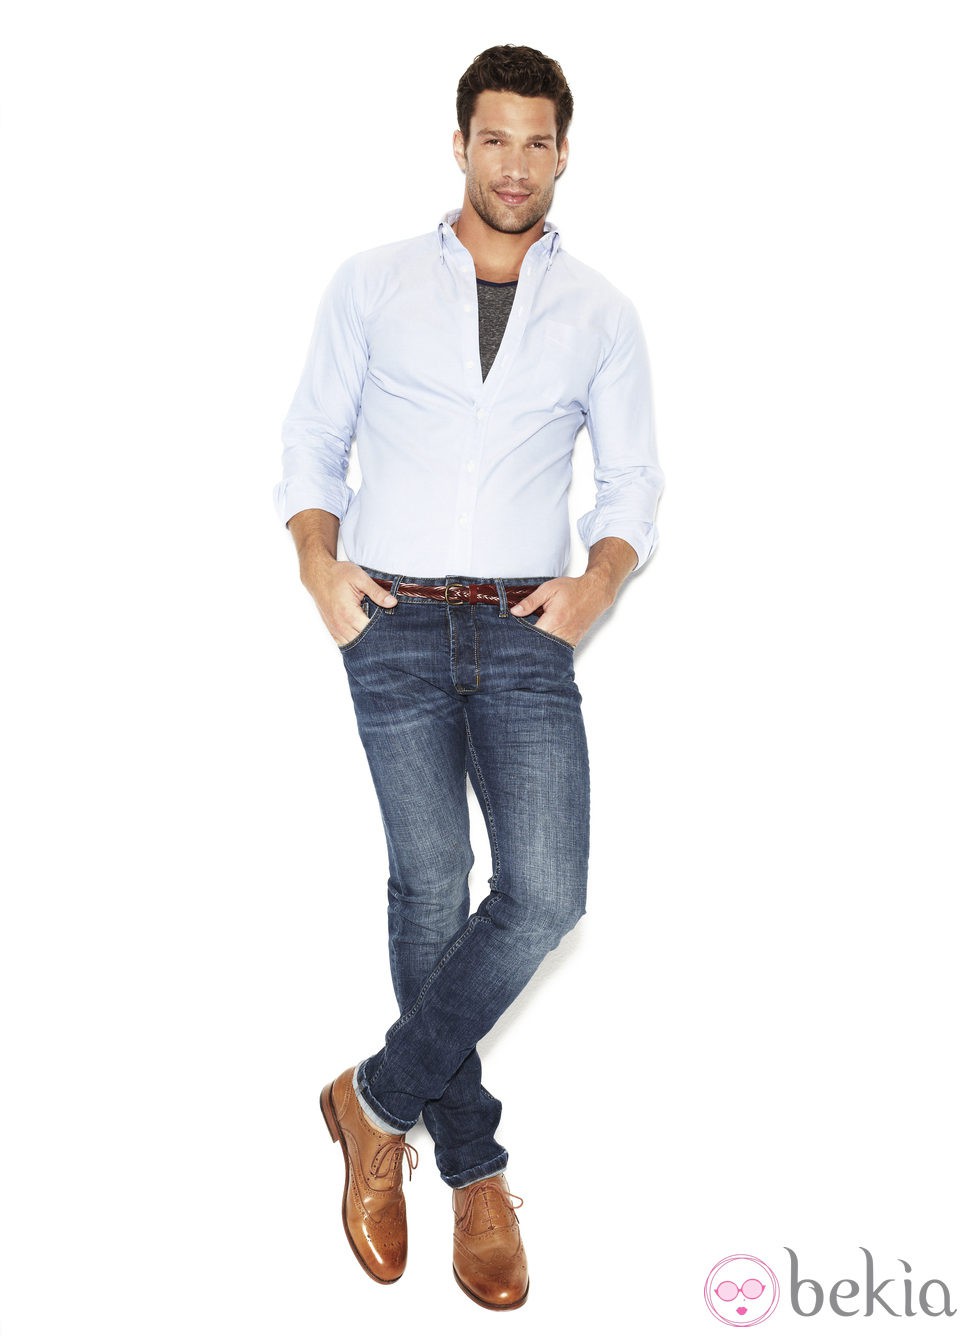 Aaron O'Connell con un modelo pitillo de la colección 'We love jeans' otoño 2012 de Suiteblanco